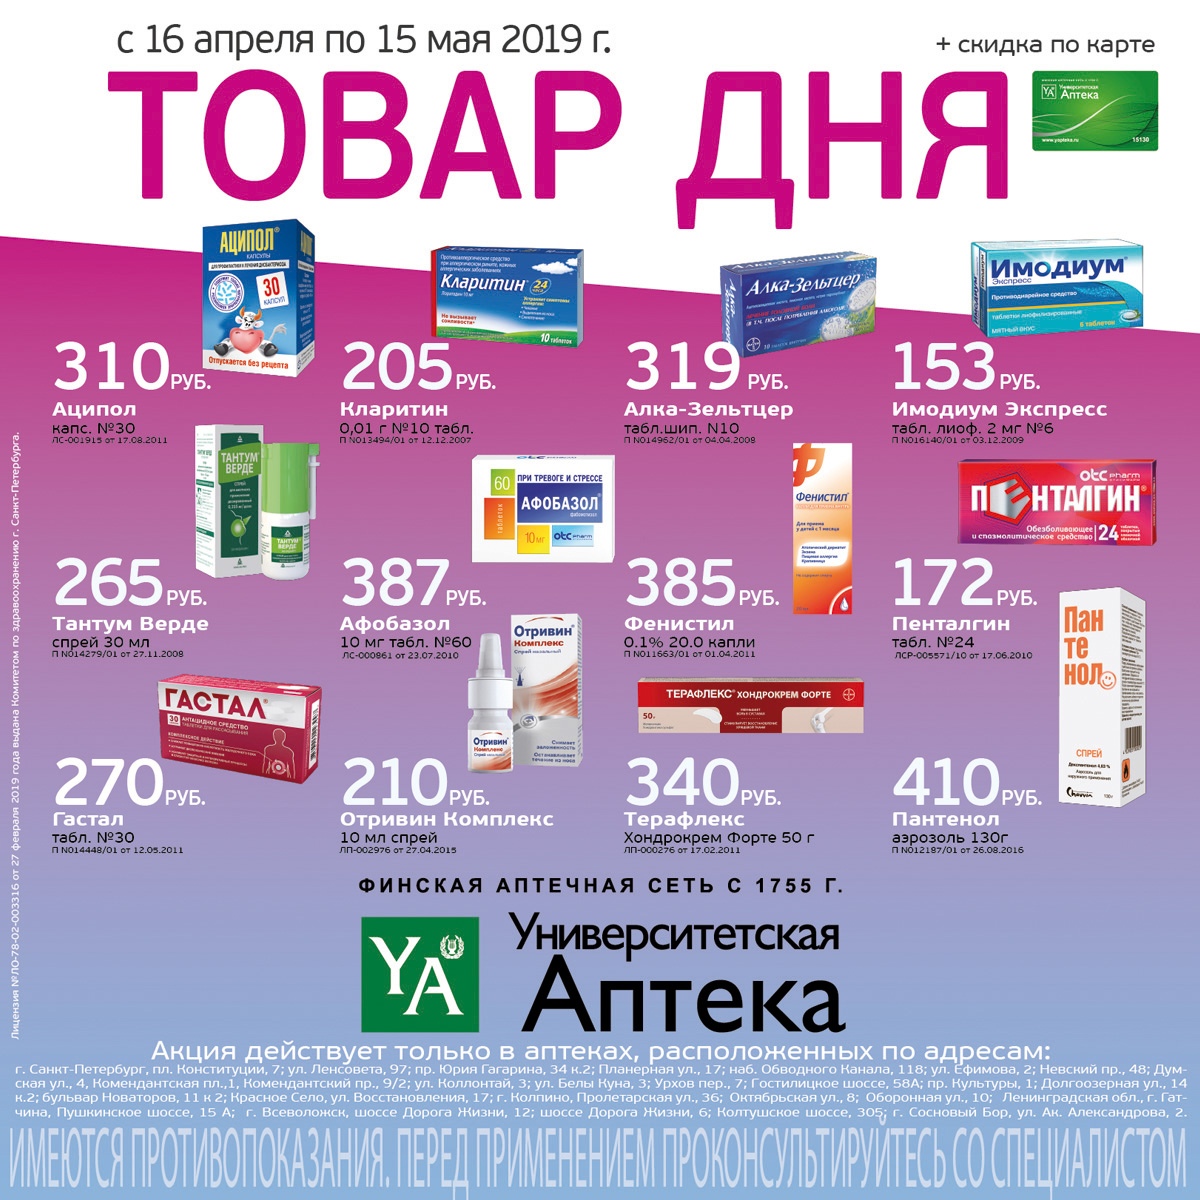 Апрель Аптека Волгоград Официальный Сайт Каталог Товаров